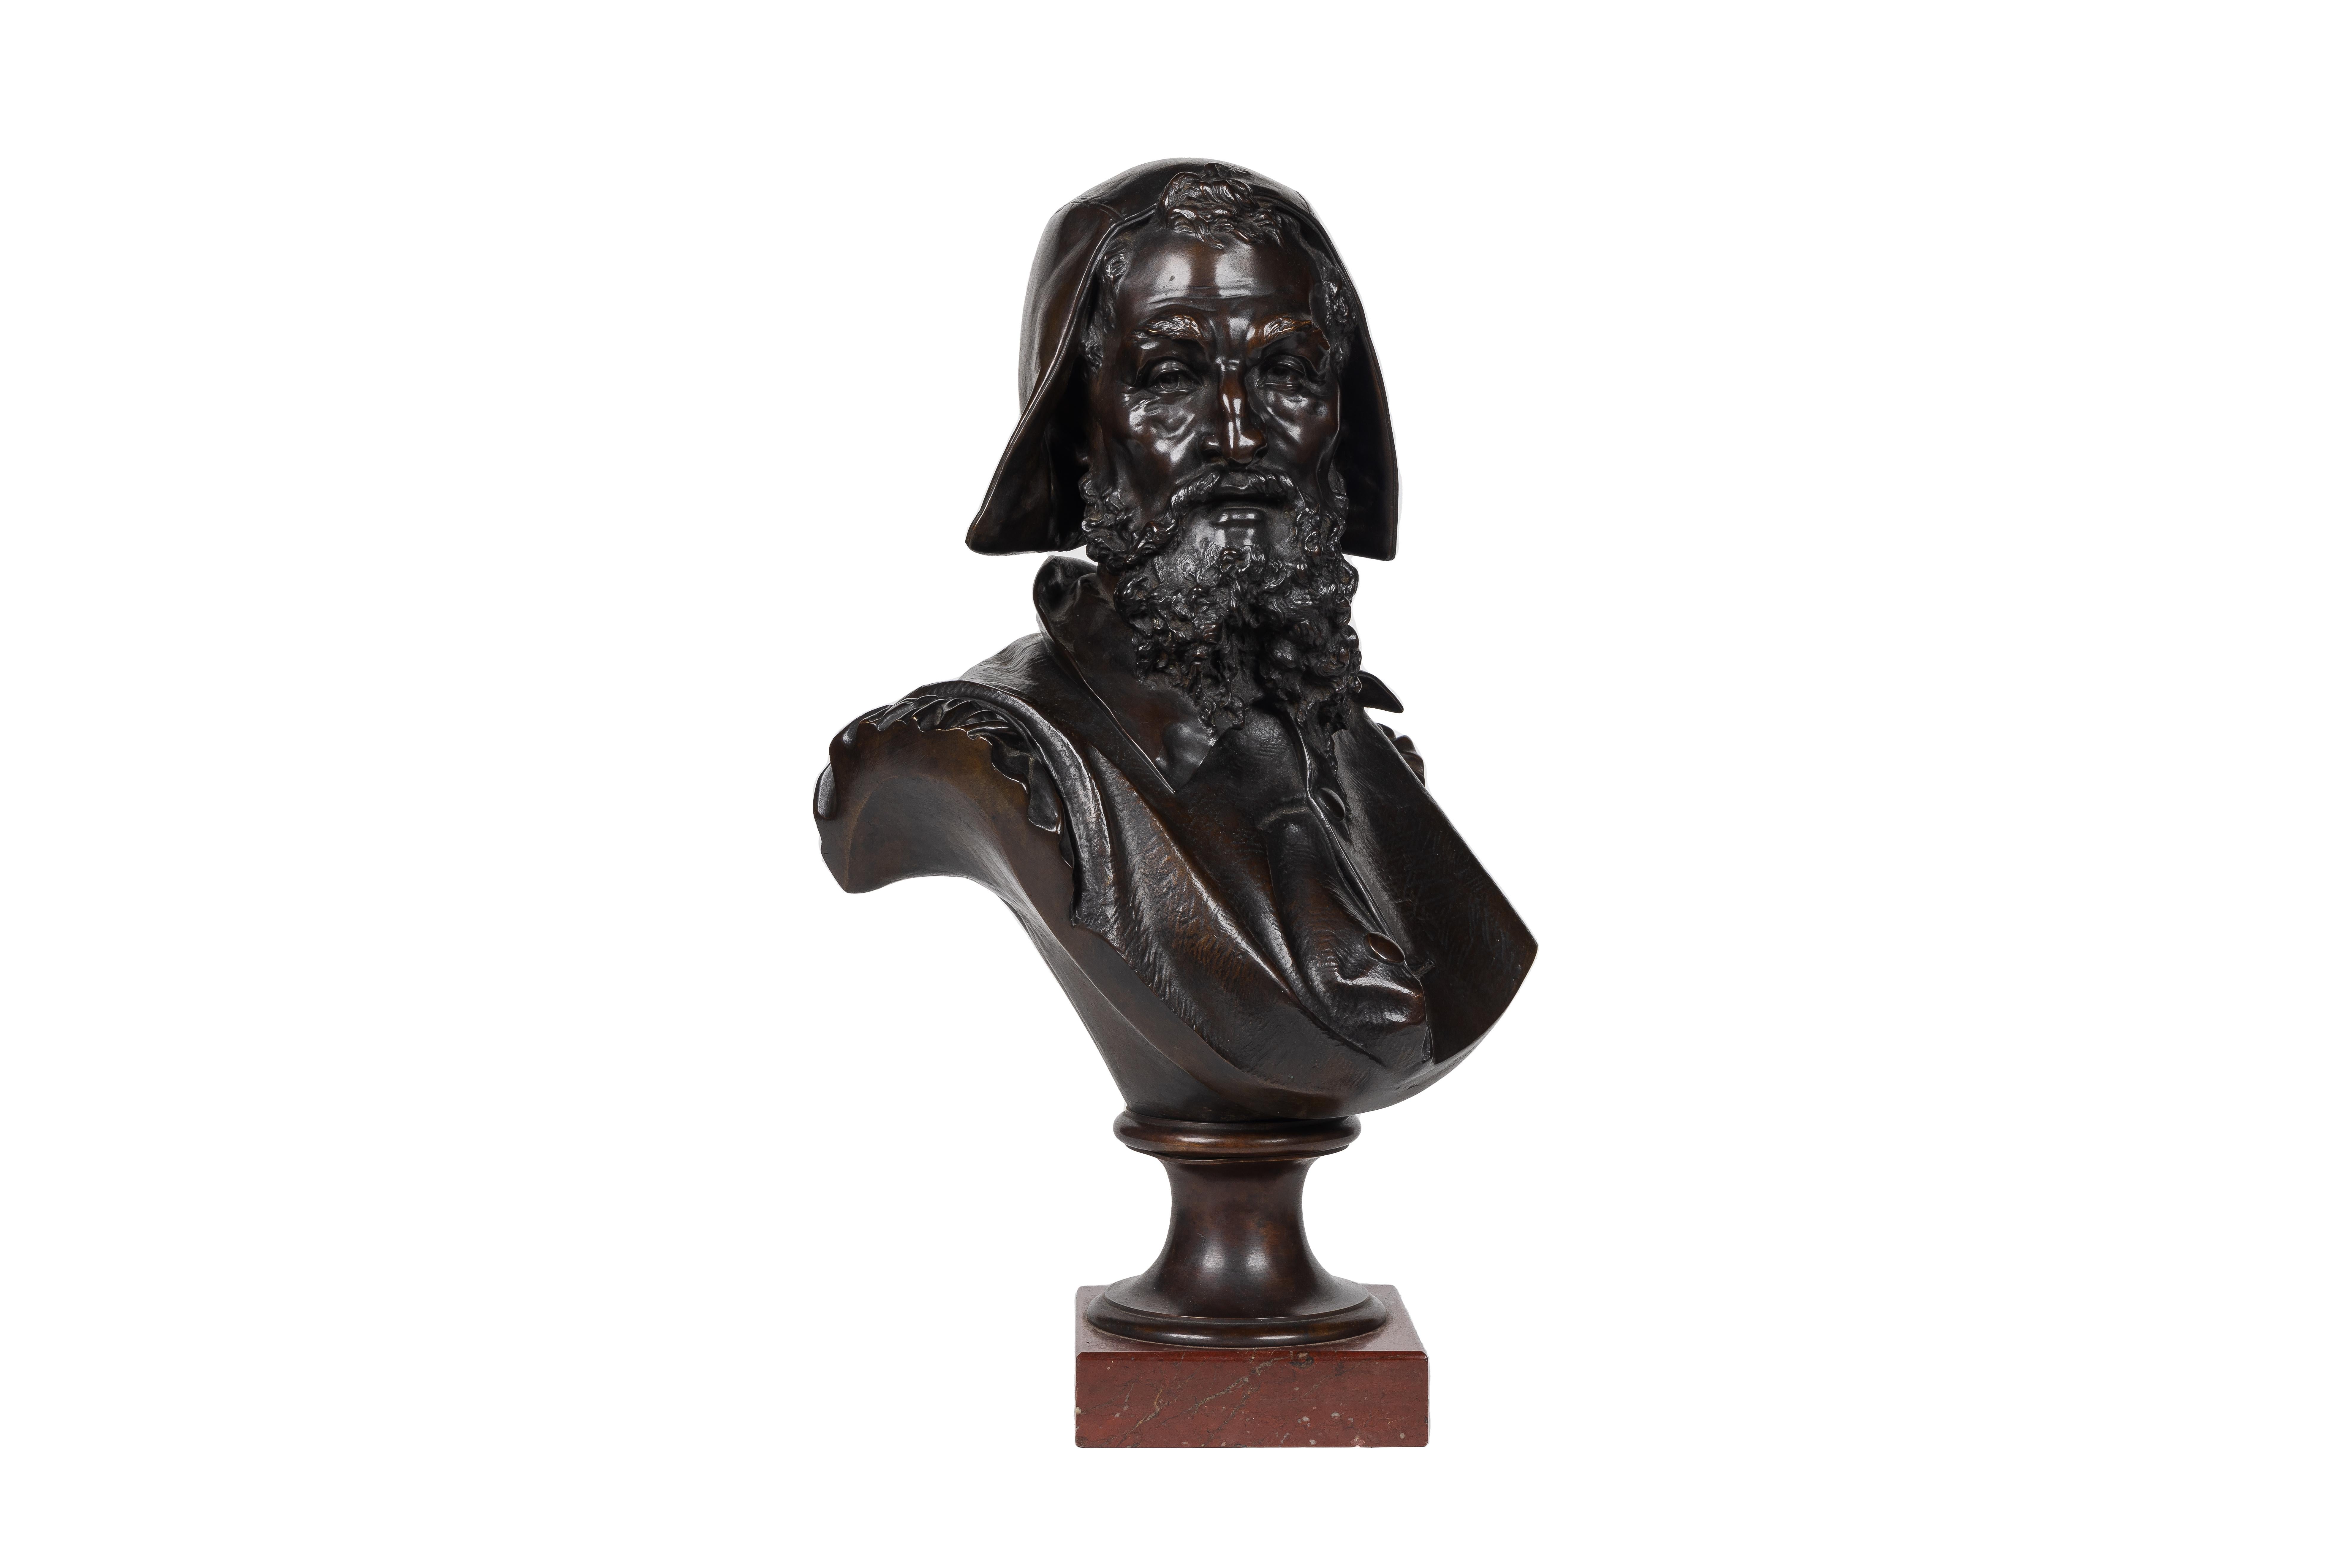 Un rare et important buste de Michel-Ange en bronze - Sculpture de Albert-Ernest Carrier-Belleuse